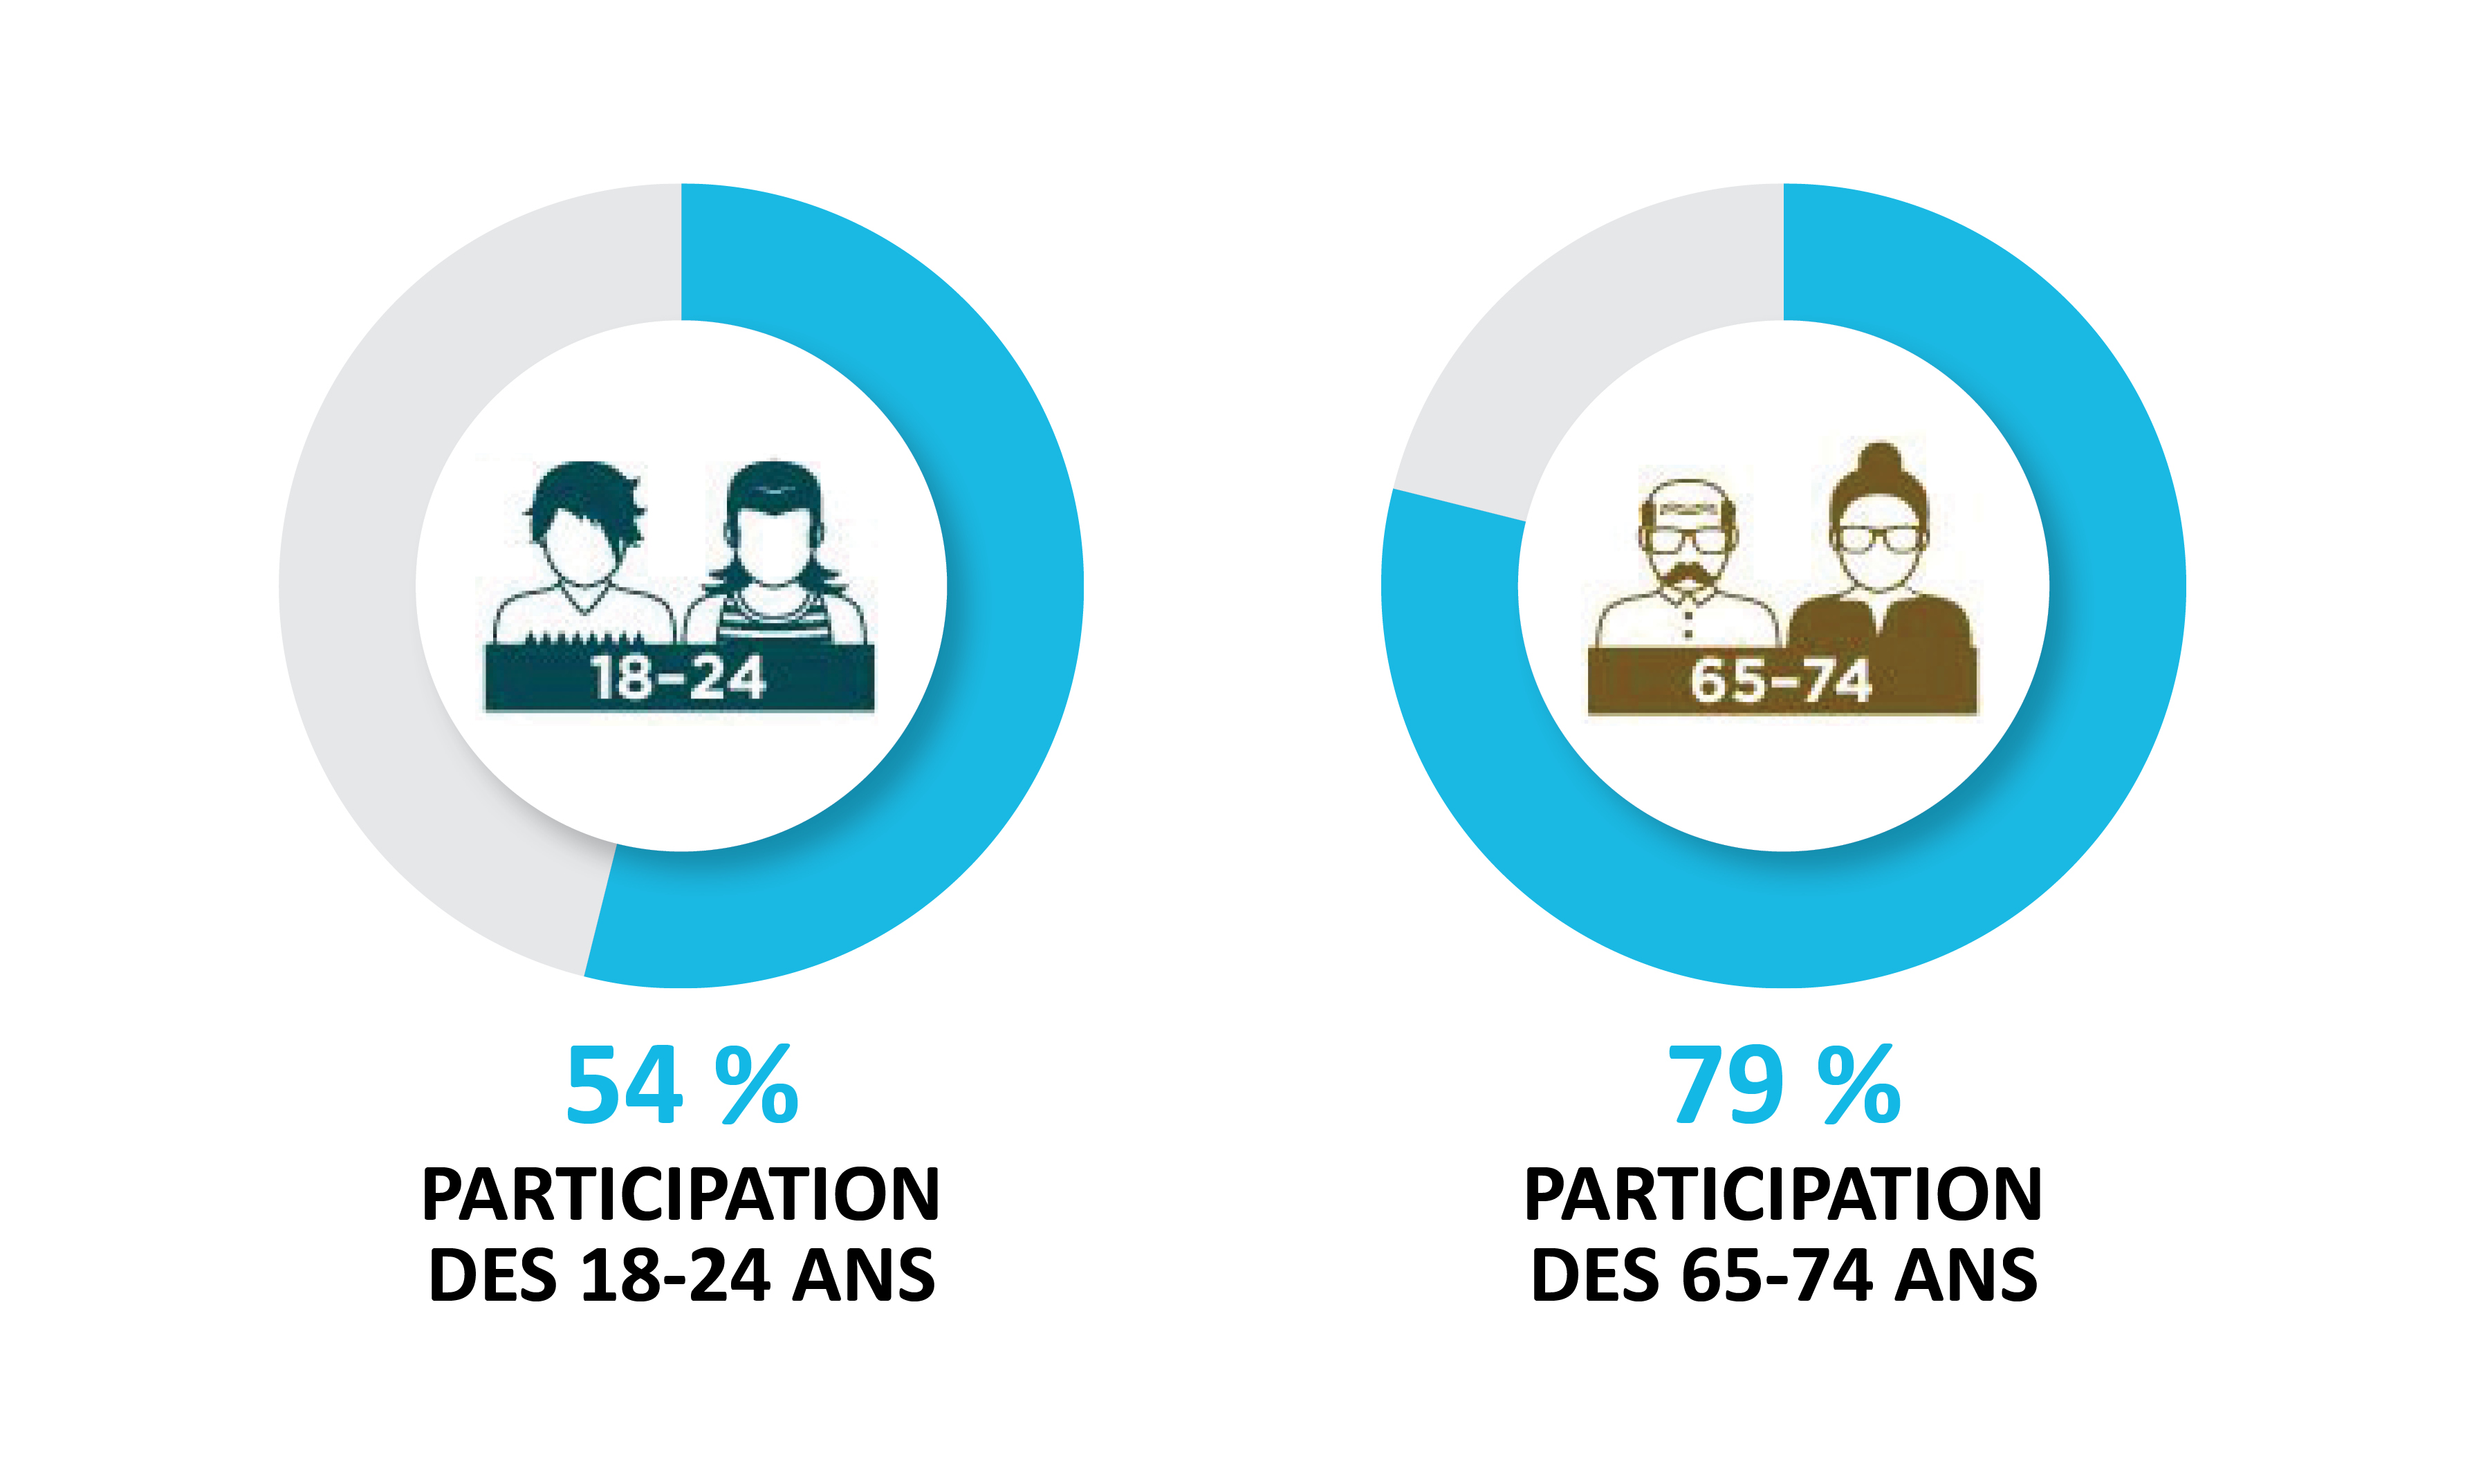 Une infographie comparant la participation de deux groupes d’âge. La participation des 18 à 24 ans est 54 %. La participation des 65 à 74 ans est 79 %.